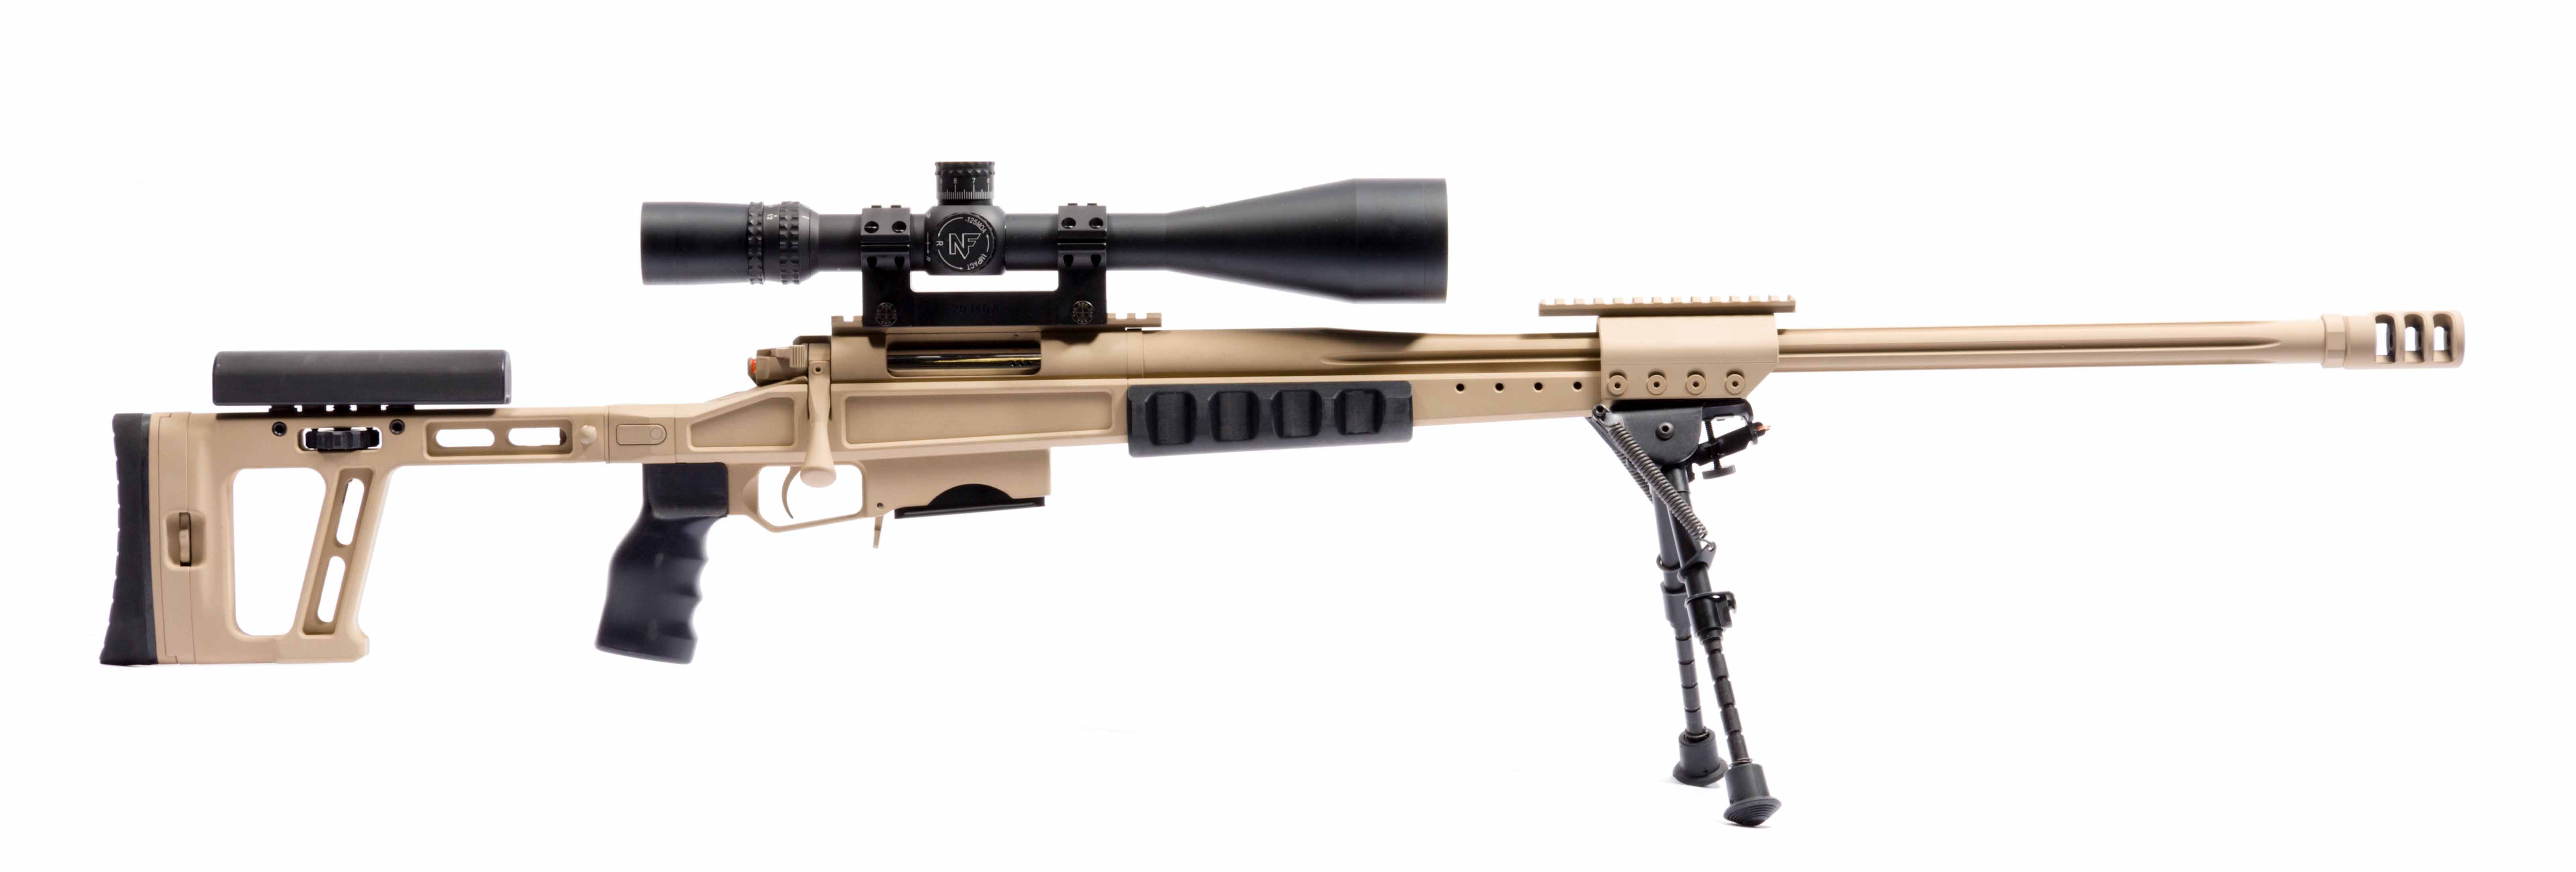 Орсис т-5000 винтовка снайперская высокоточная — характеристики orsis se t-5000